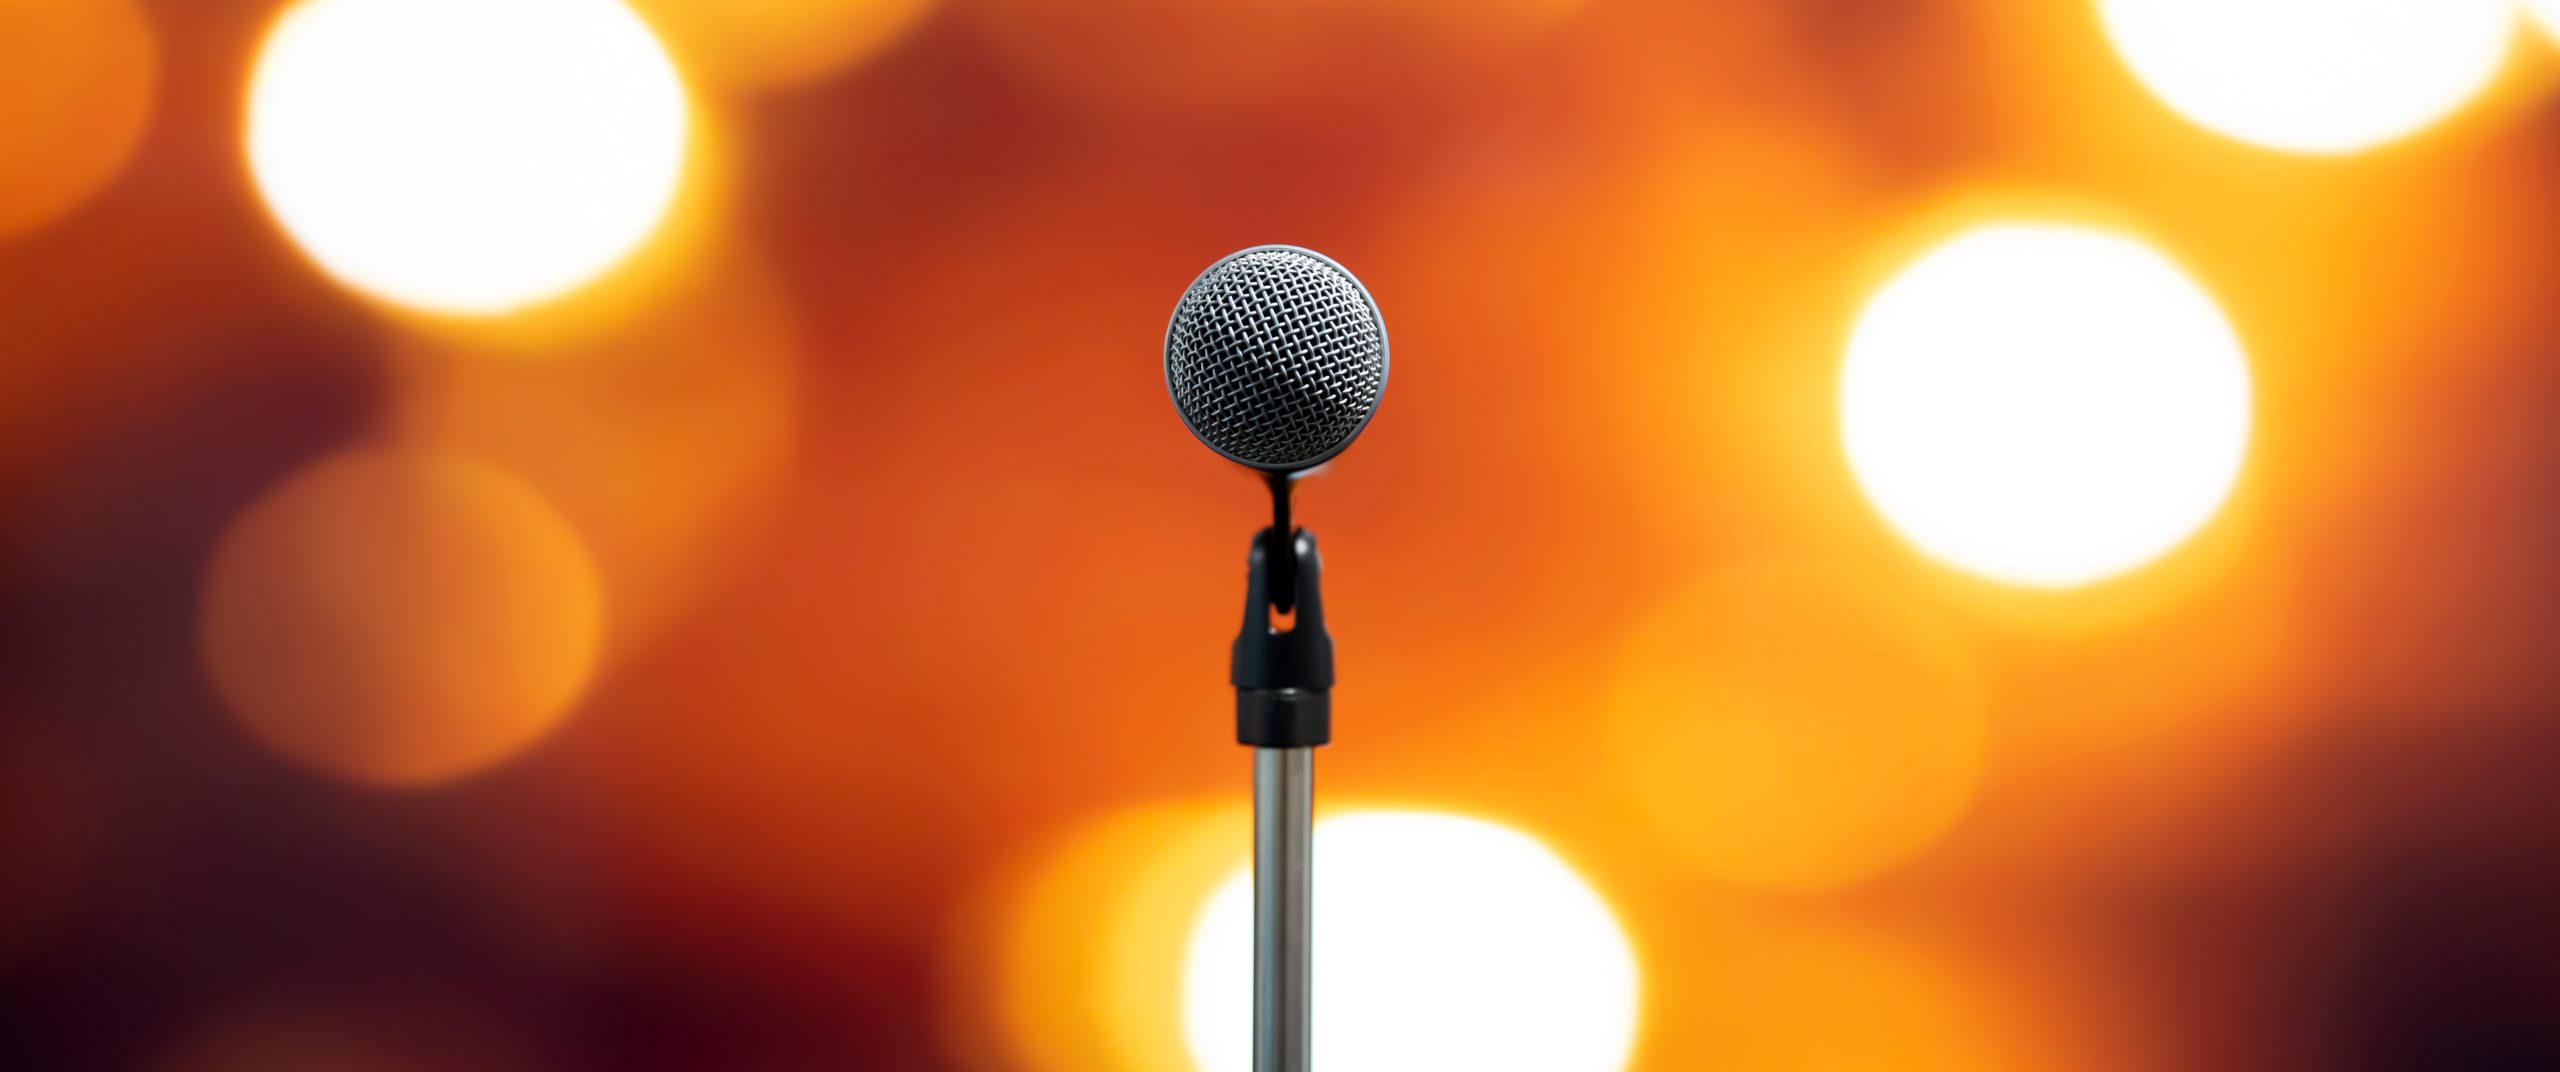 Närbild på en mikrofon framför en suddig bakgrund med lampor riktade mot scenen